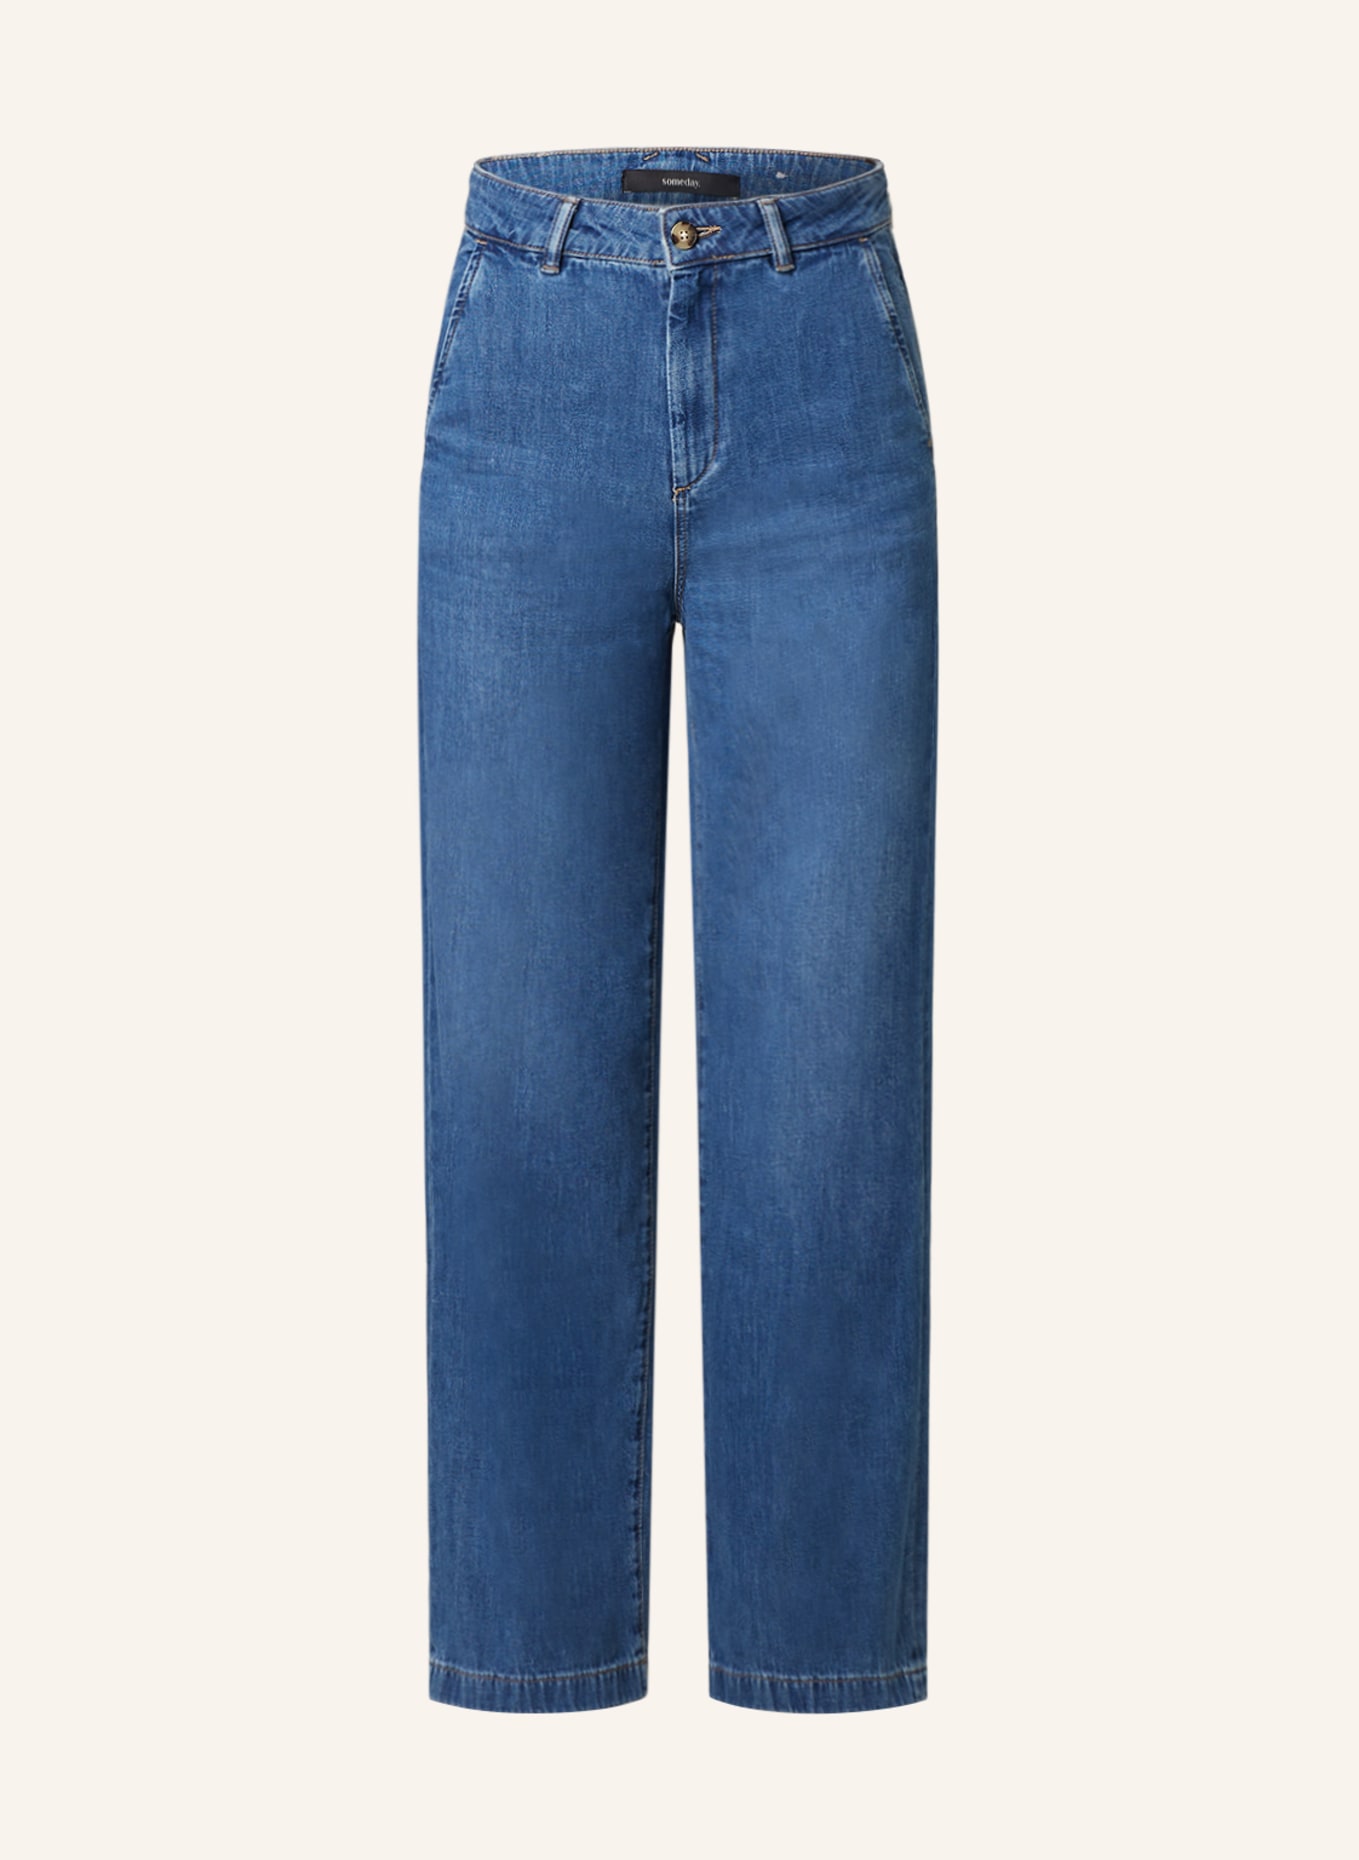 someday Straight Jeans CELEN, Farbe: 70097 modern mid blue (Bild 1)